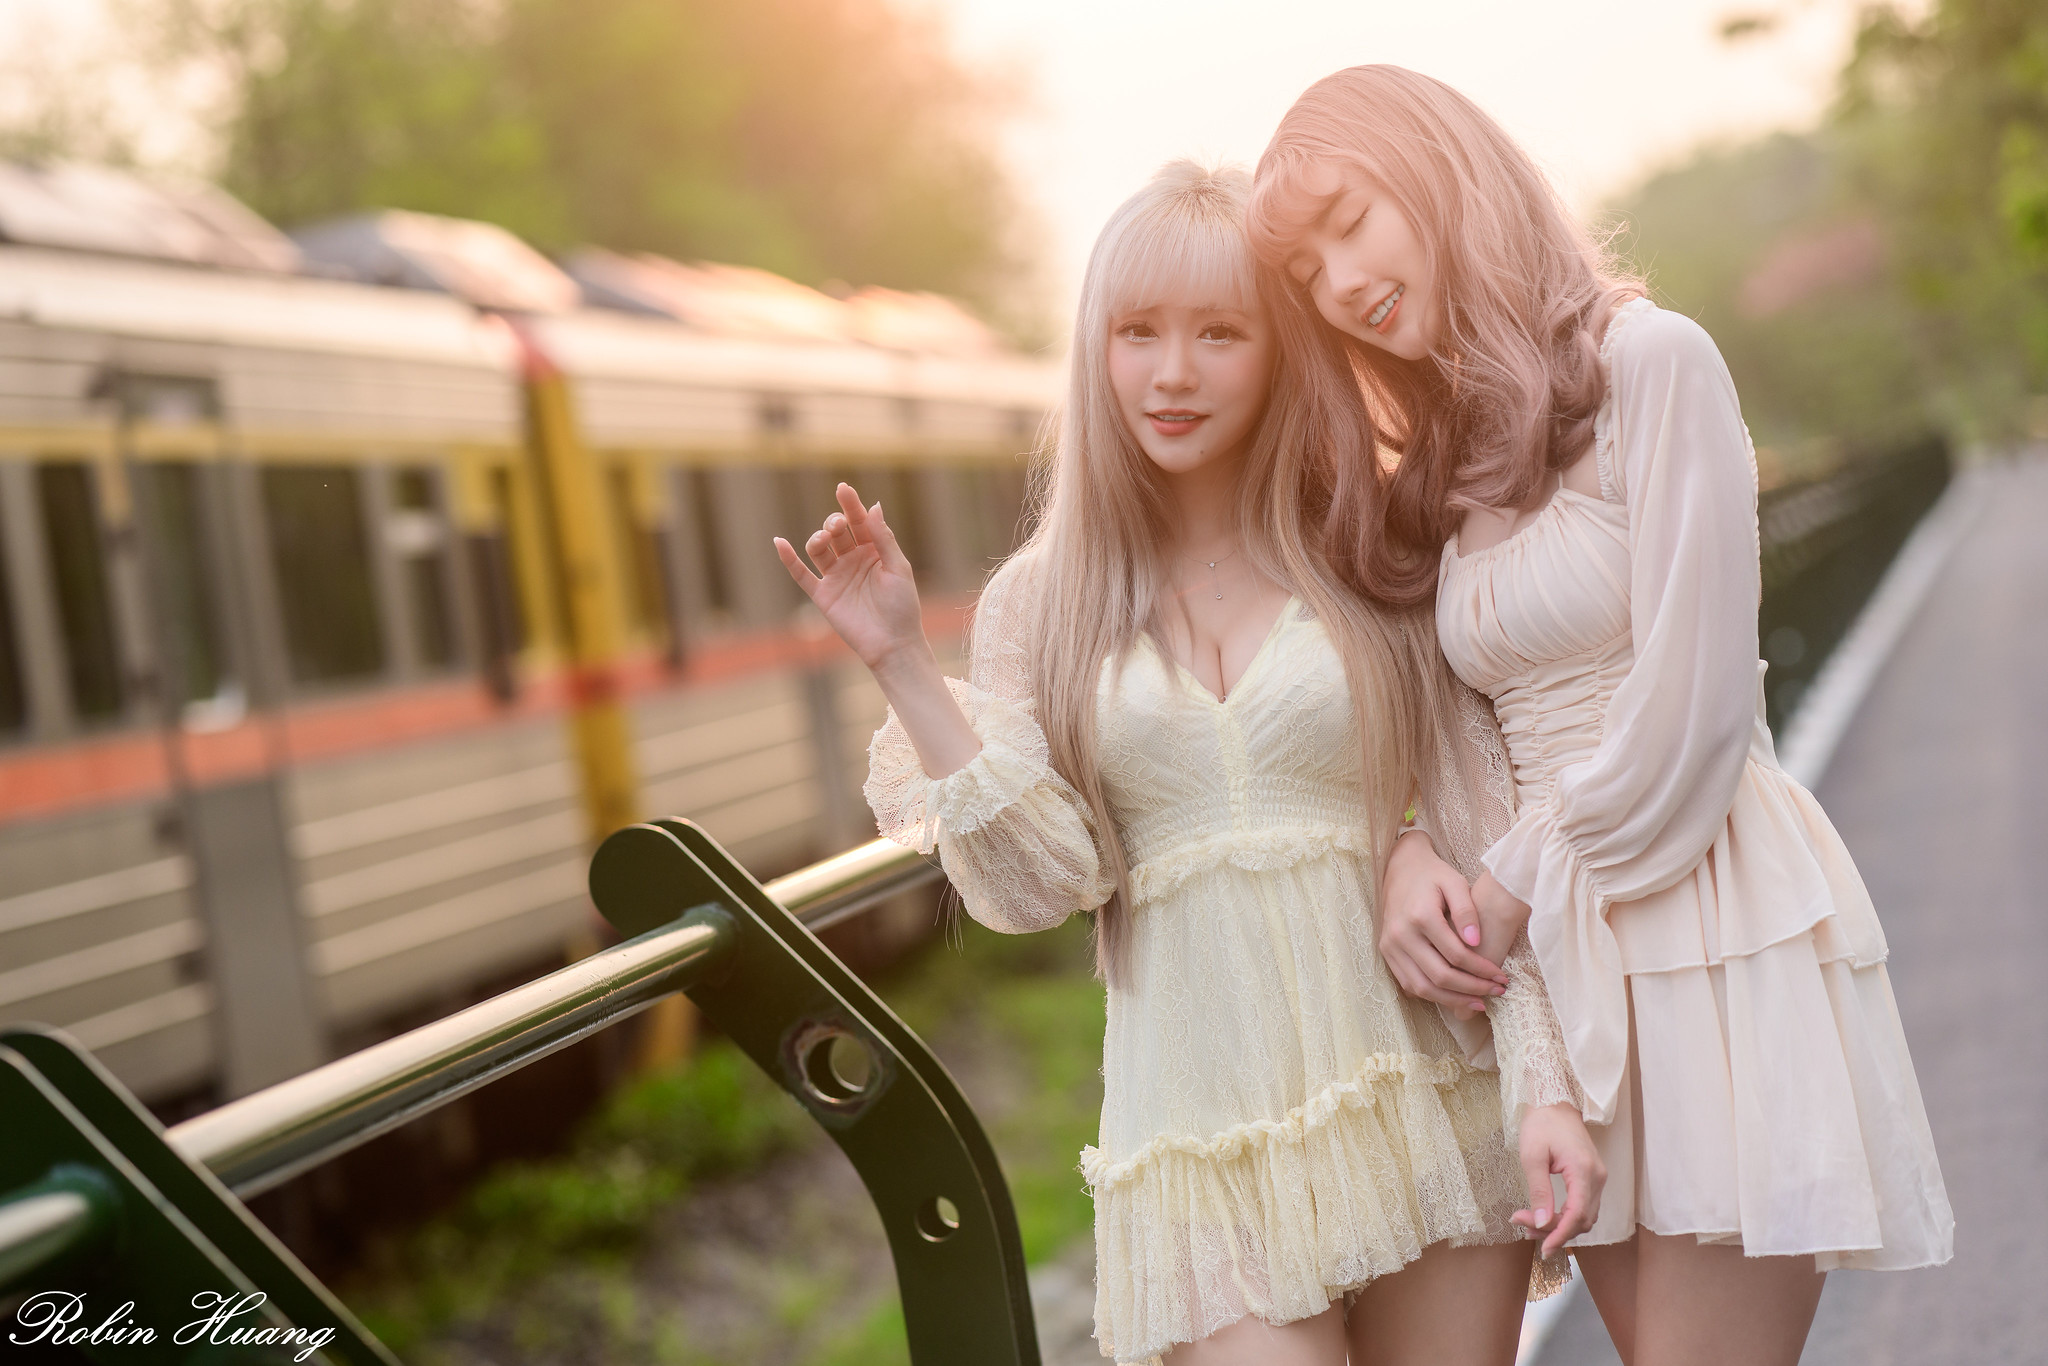 Robin Huang Women Two Women Asian Dyed Hair Smiling Makeup Dress Train Bright 2048x1366